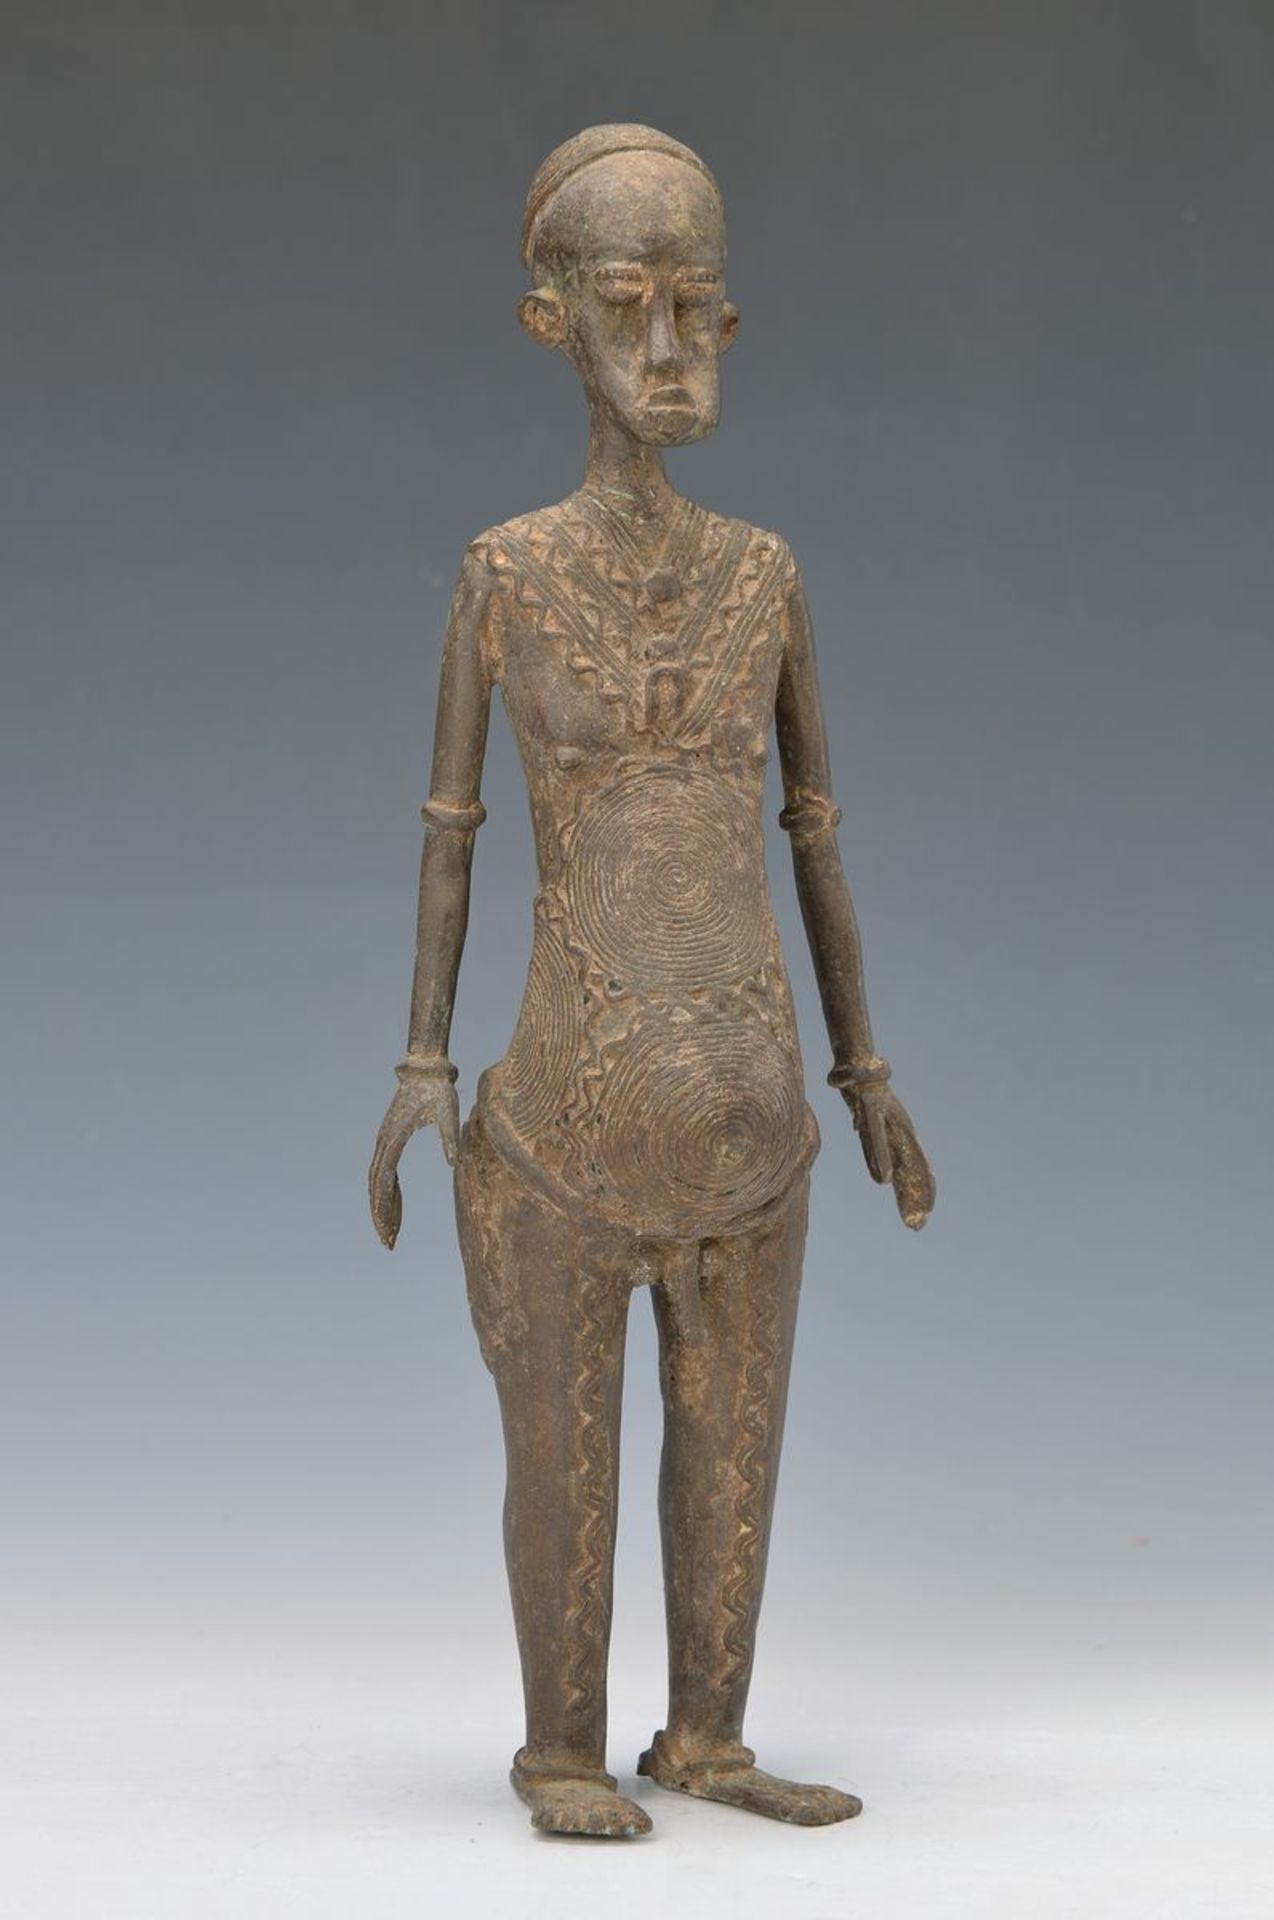 Ahnenfigur, Baule, Mali, ca. 30-40 Jahre alt, Bronze, stehender Ahne mit reichem Verzierungen,